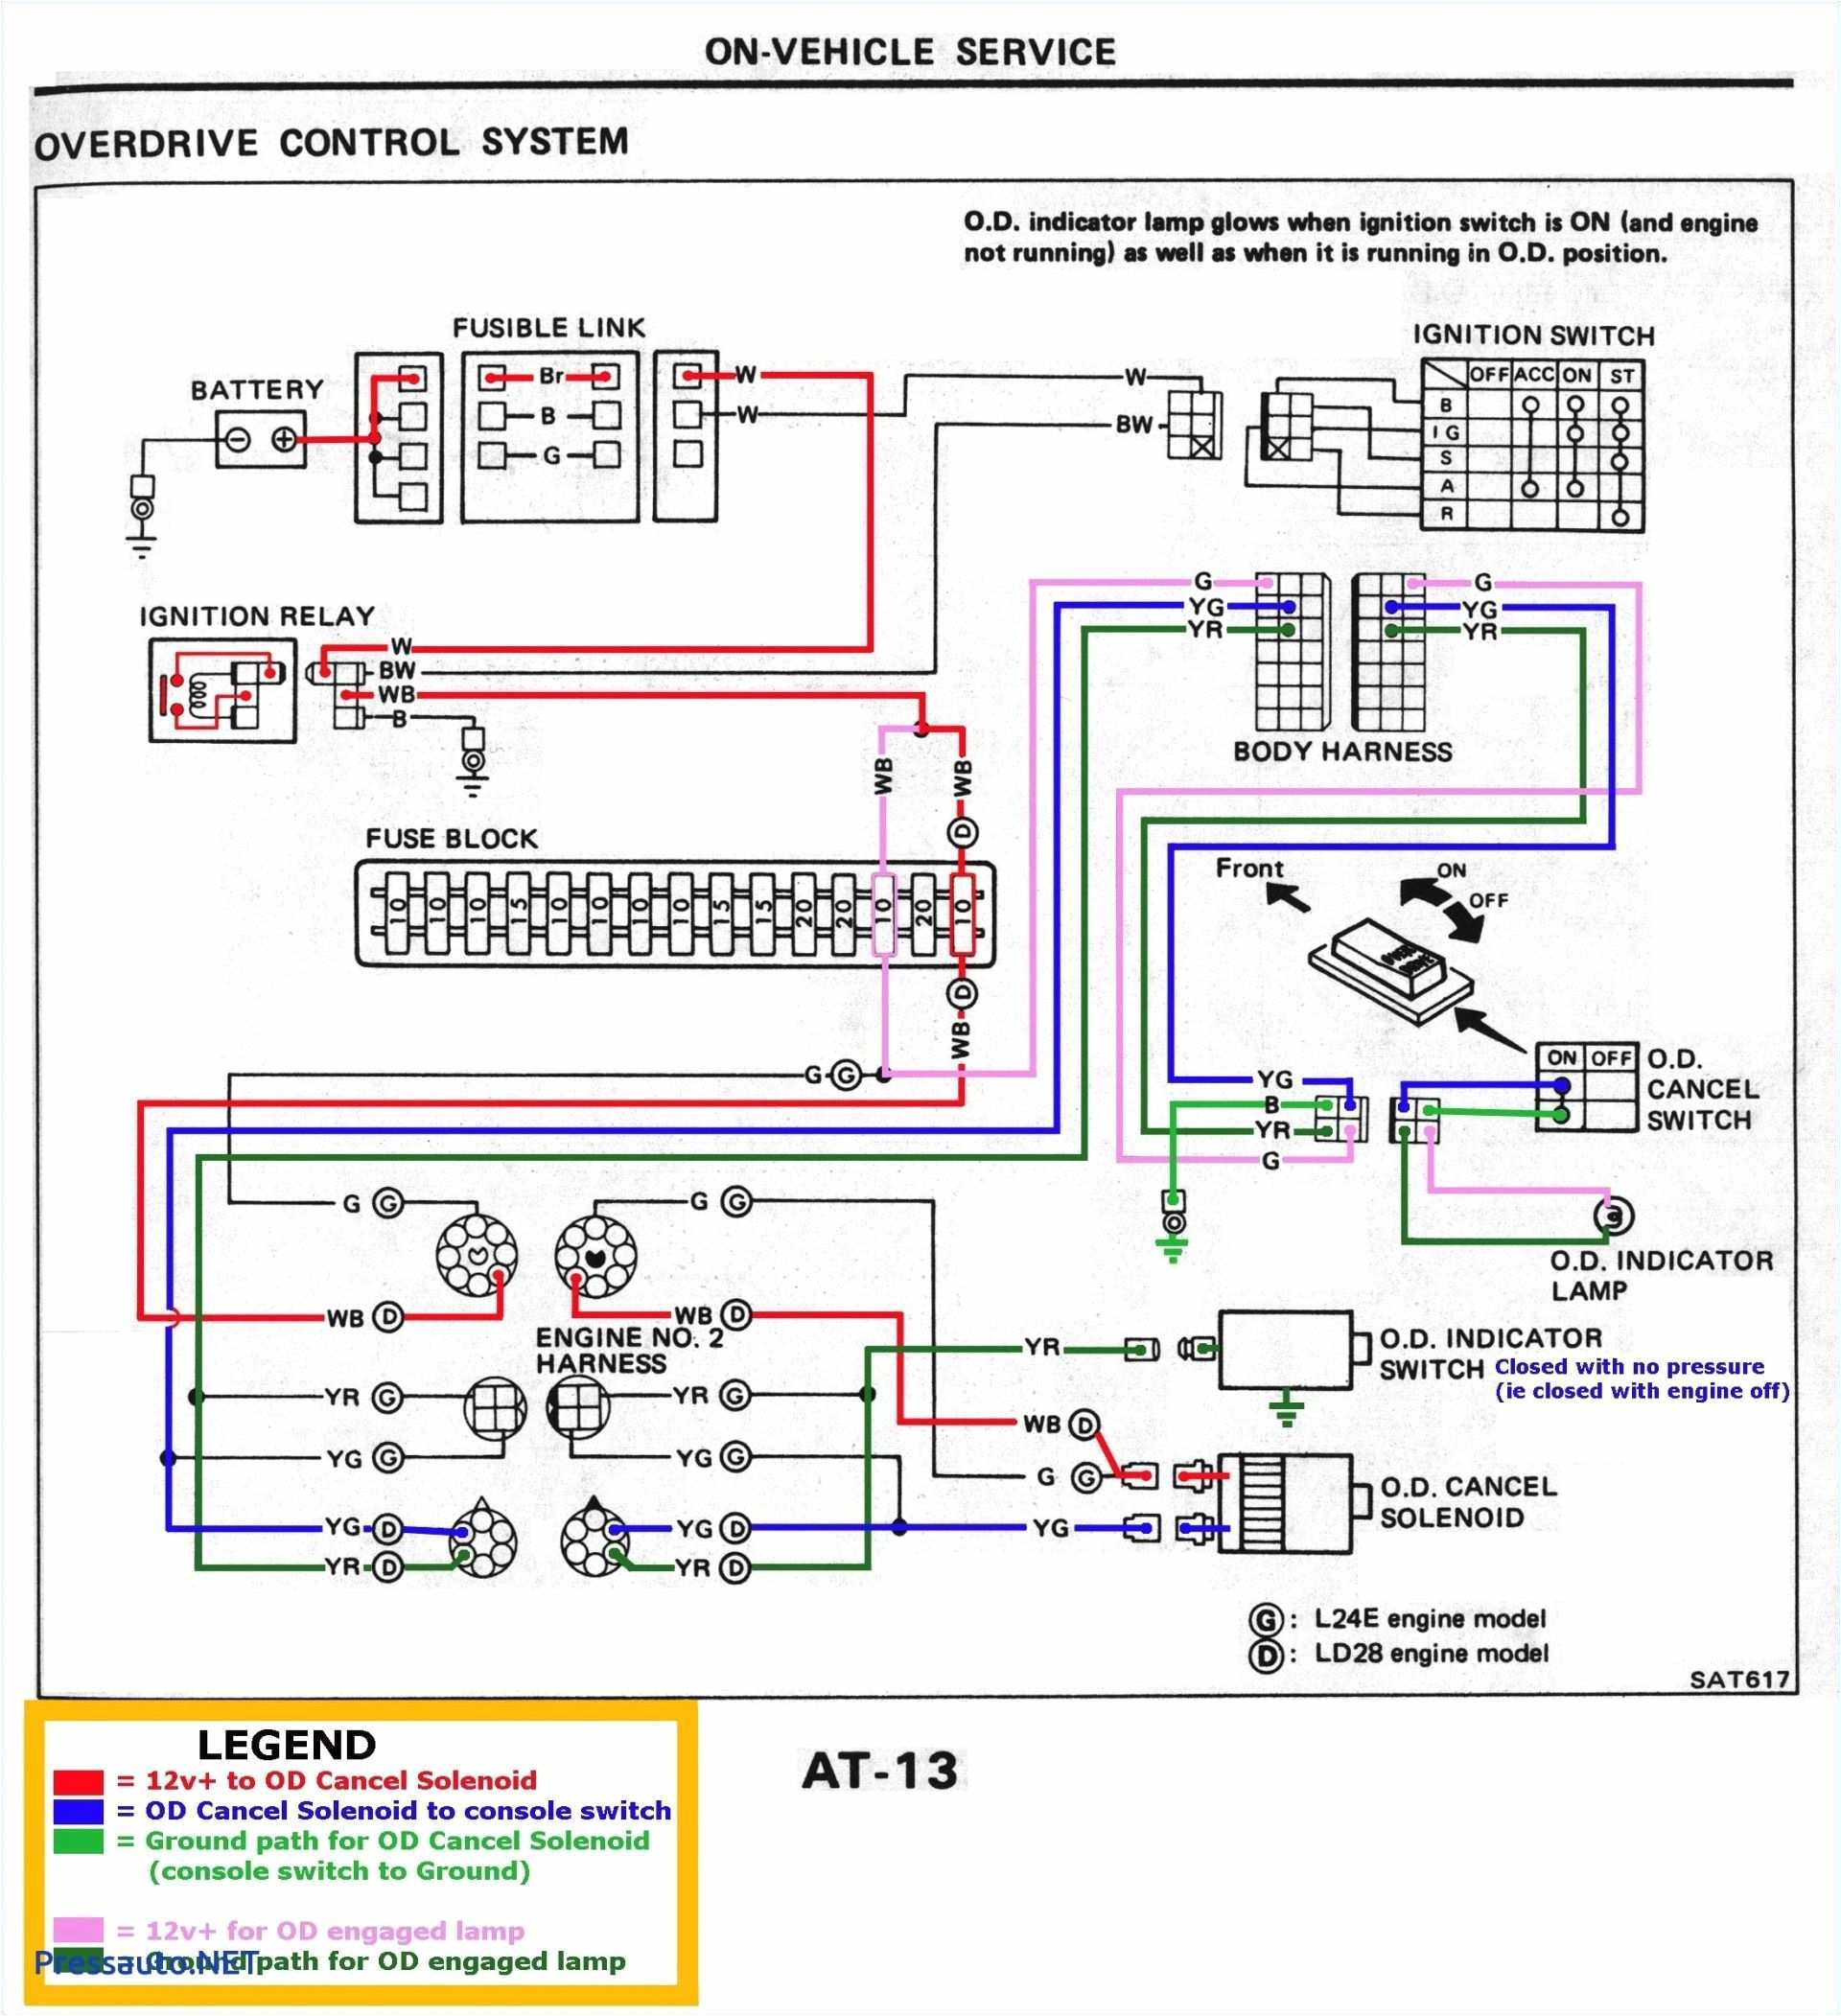 acro hid light wiring diagram wiring diagram name duncan meter wiring diagram wiring diagram acro hid